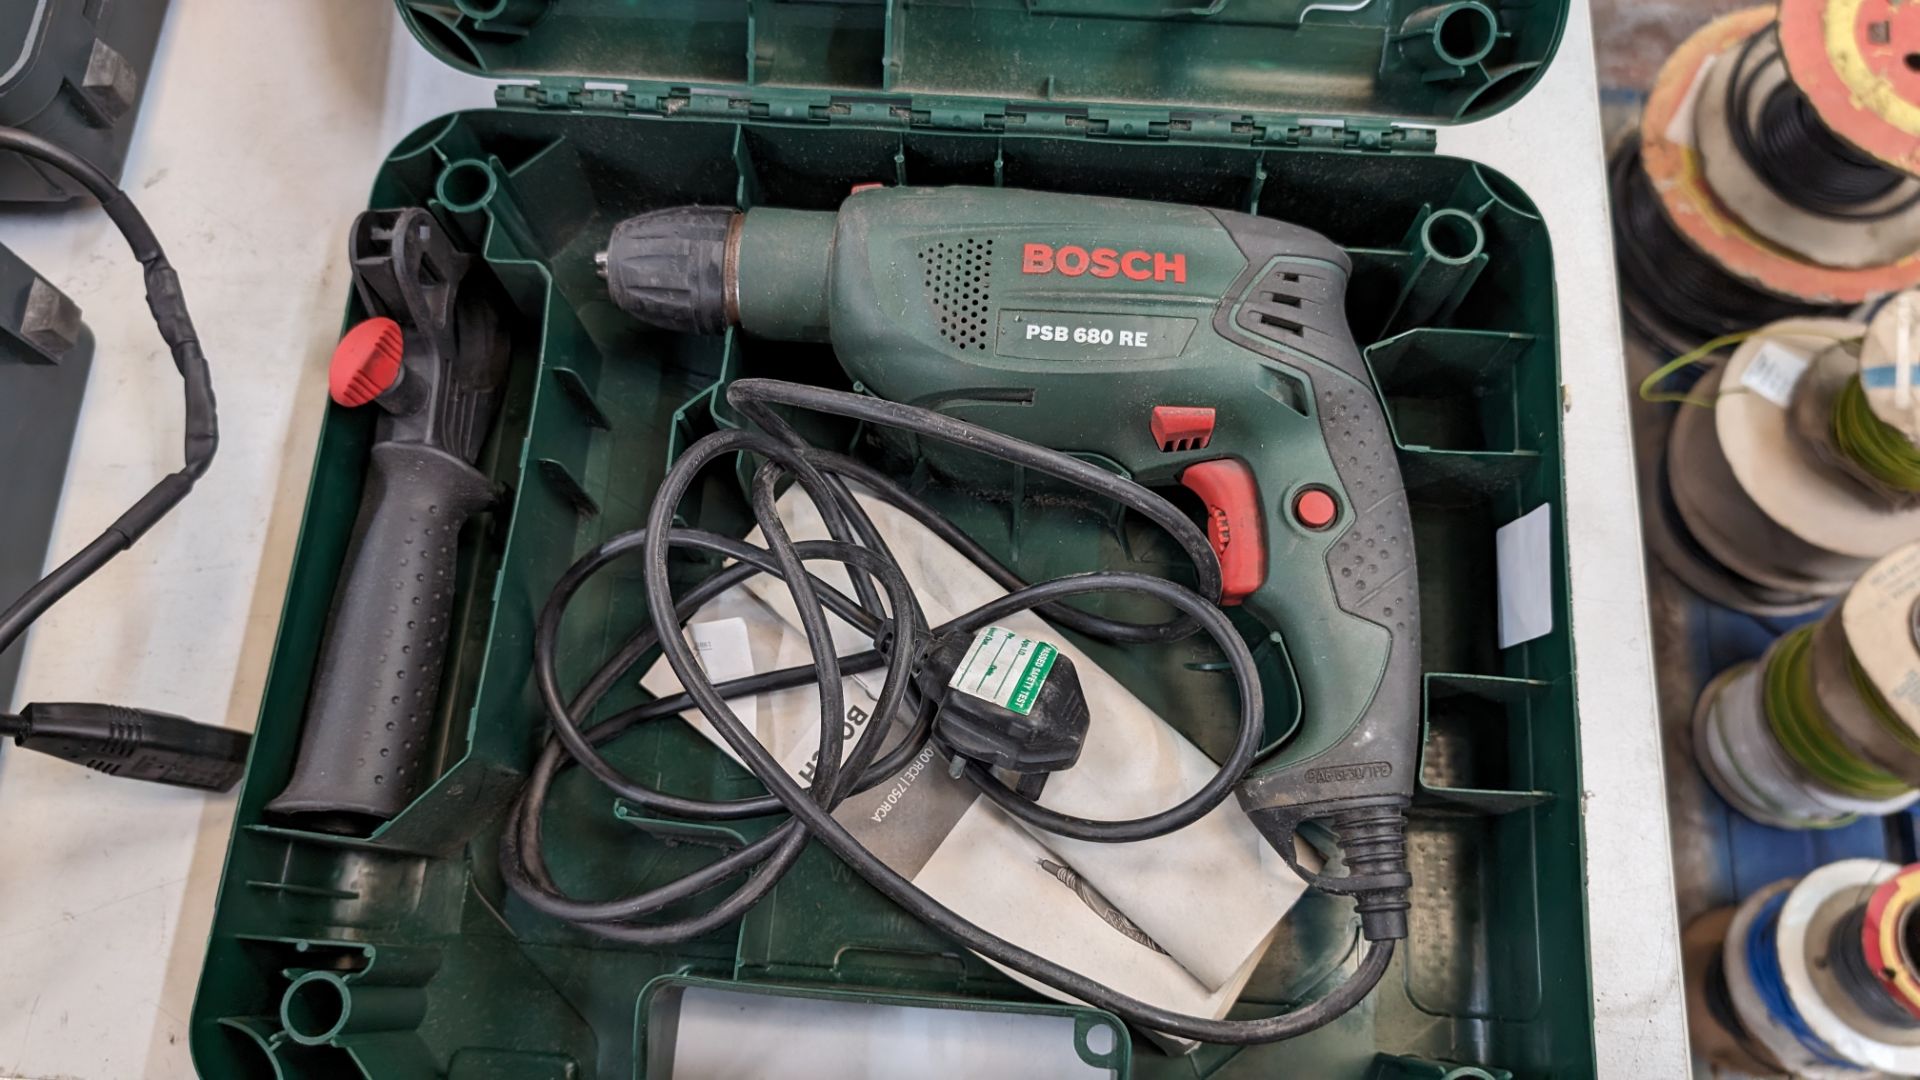 Bosch PSB680RE drill in case - Bild 3 aus 5